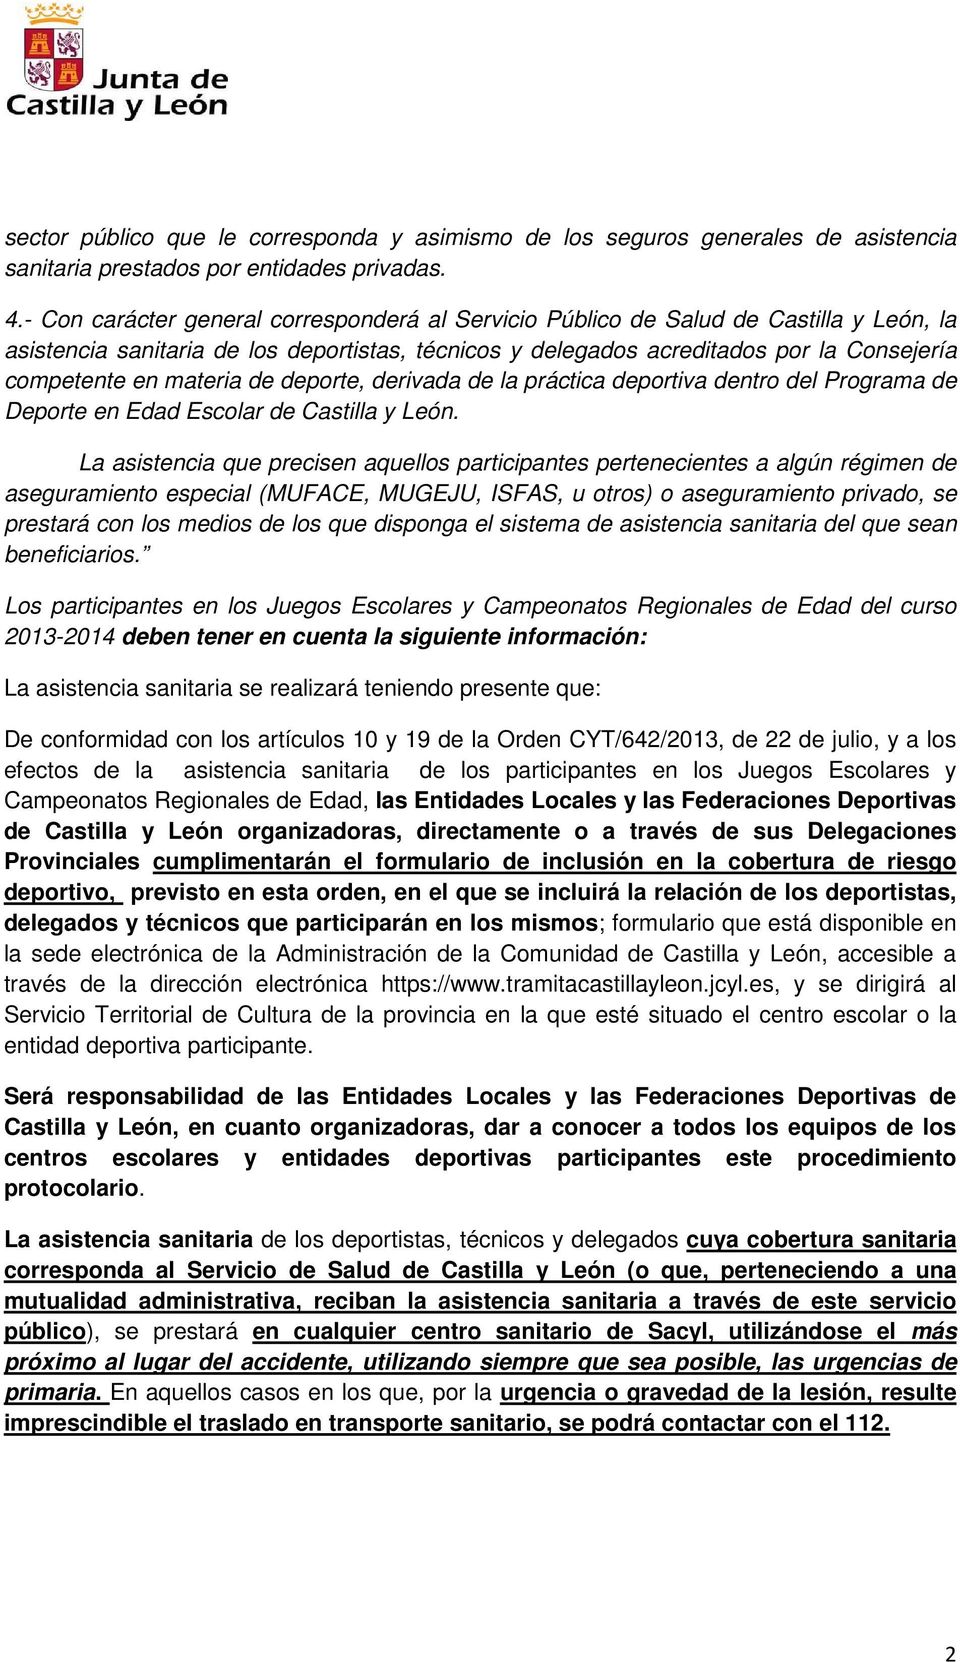 materia de deporte, derivada de la práctica deportiva dentro del Programa de Deporte en Edad Escolar de Castilla y León.